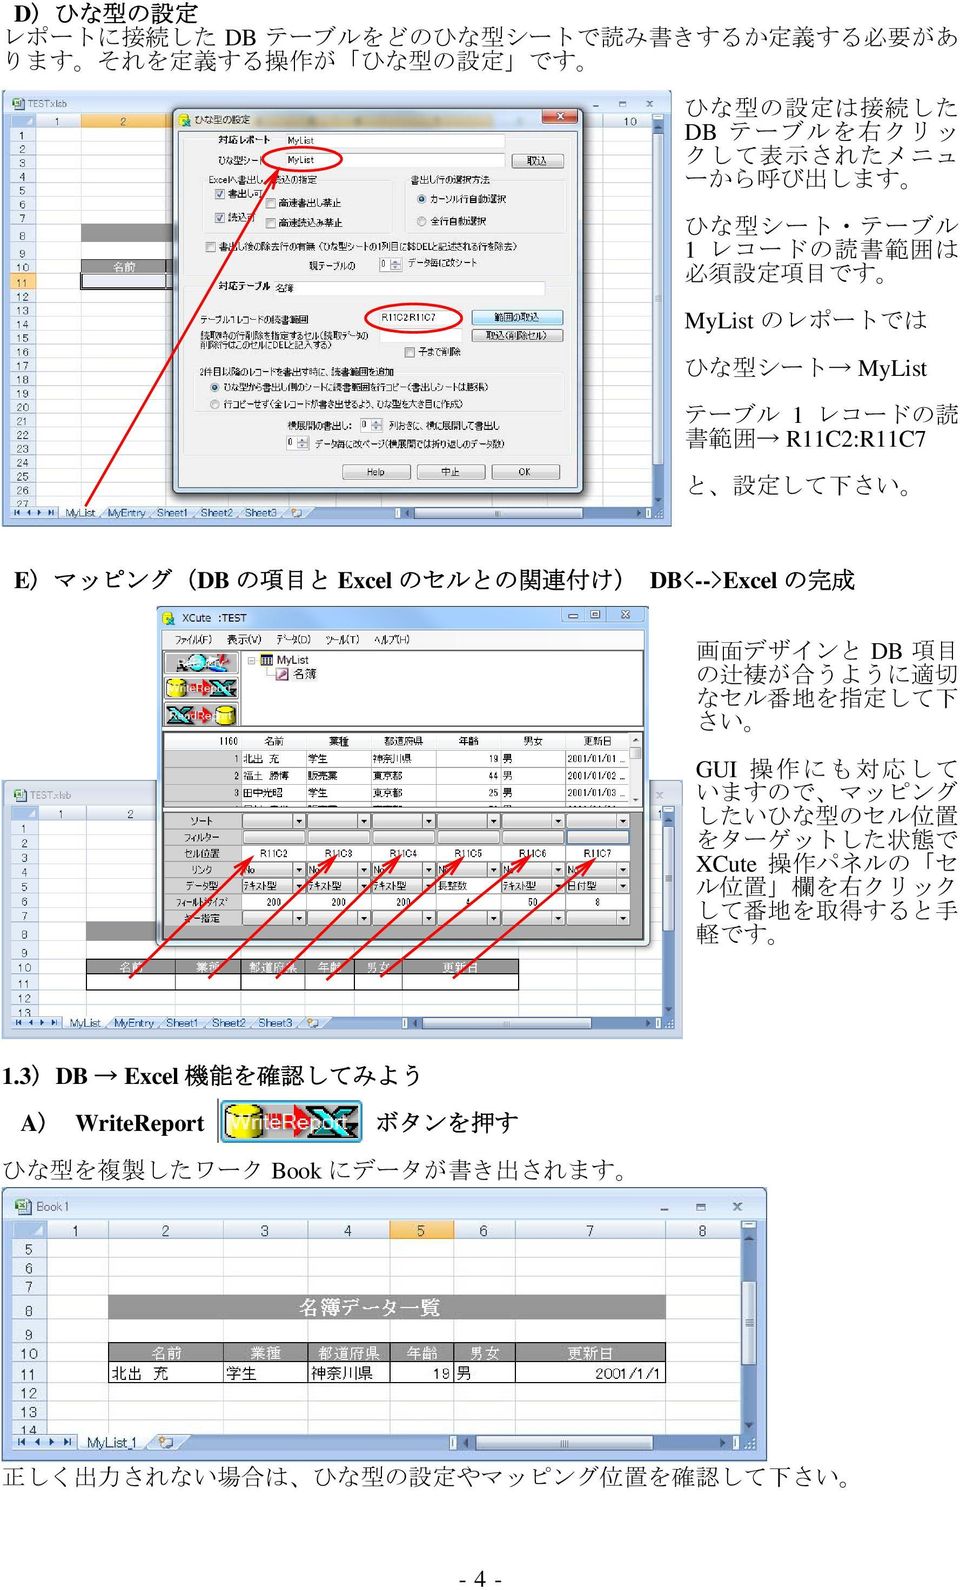 DB<-->Excel の 完 成 画 面 デザインと DB 項 目 の 辻 褄 が 合 うように 適 切 なセル 番 地 を 指 定 して 下 さい GUI 操 作 にも 対 応 して いますので マッピング したいひな 型 のセル 位 置 をターゲットした 状 態 で XCute 操 作 パネルの セ ル 位 置 欄 を 右 クリック